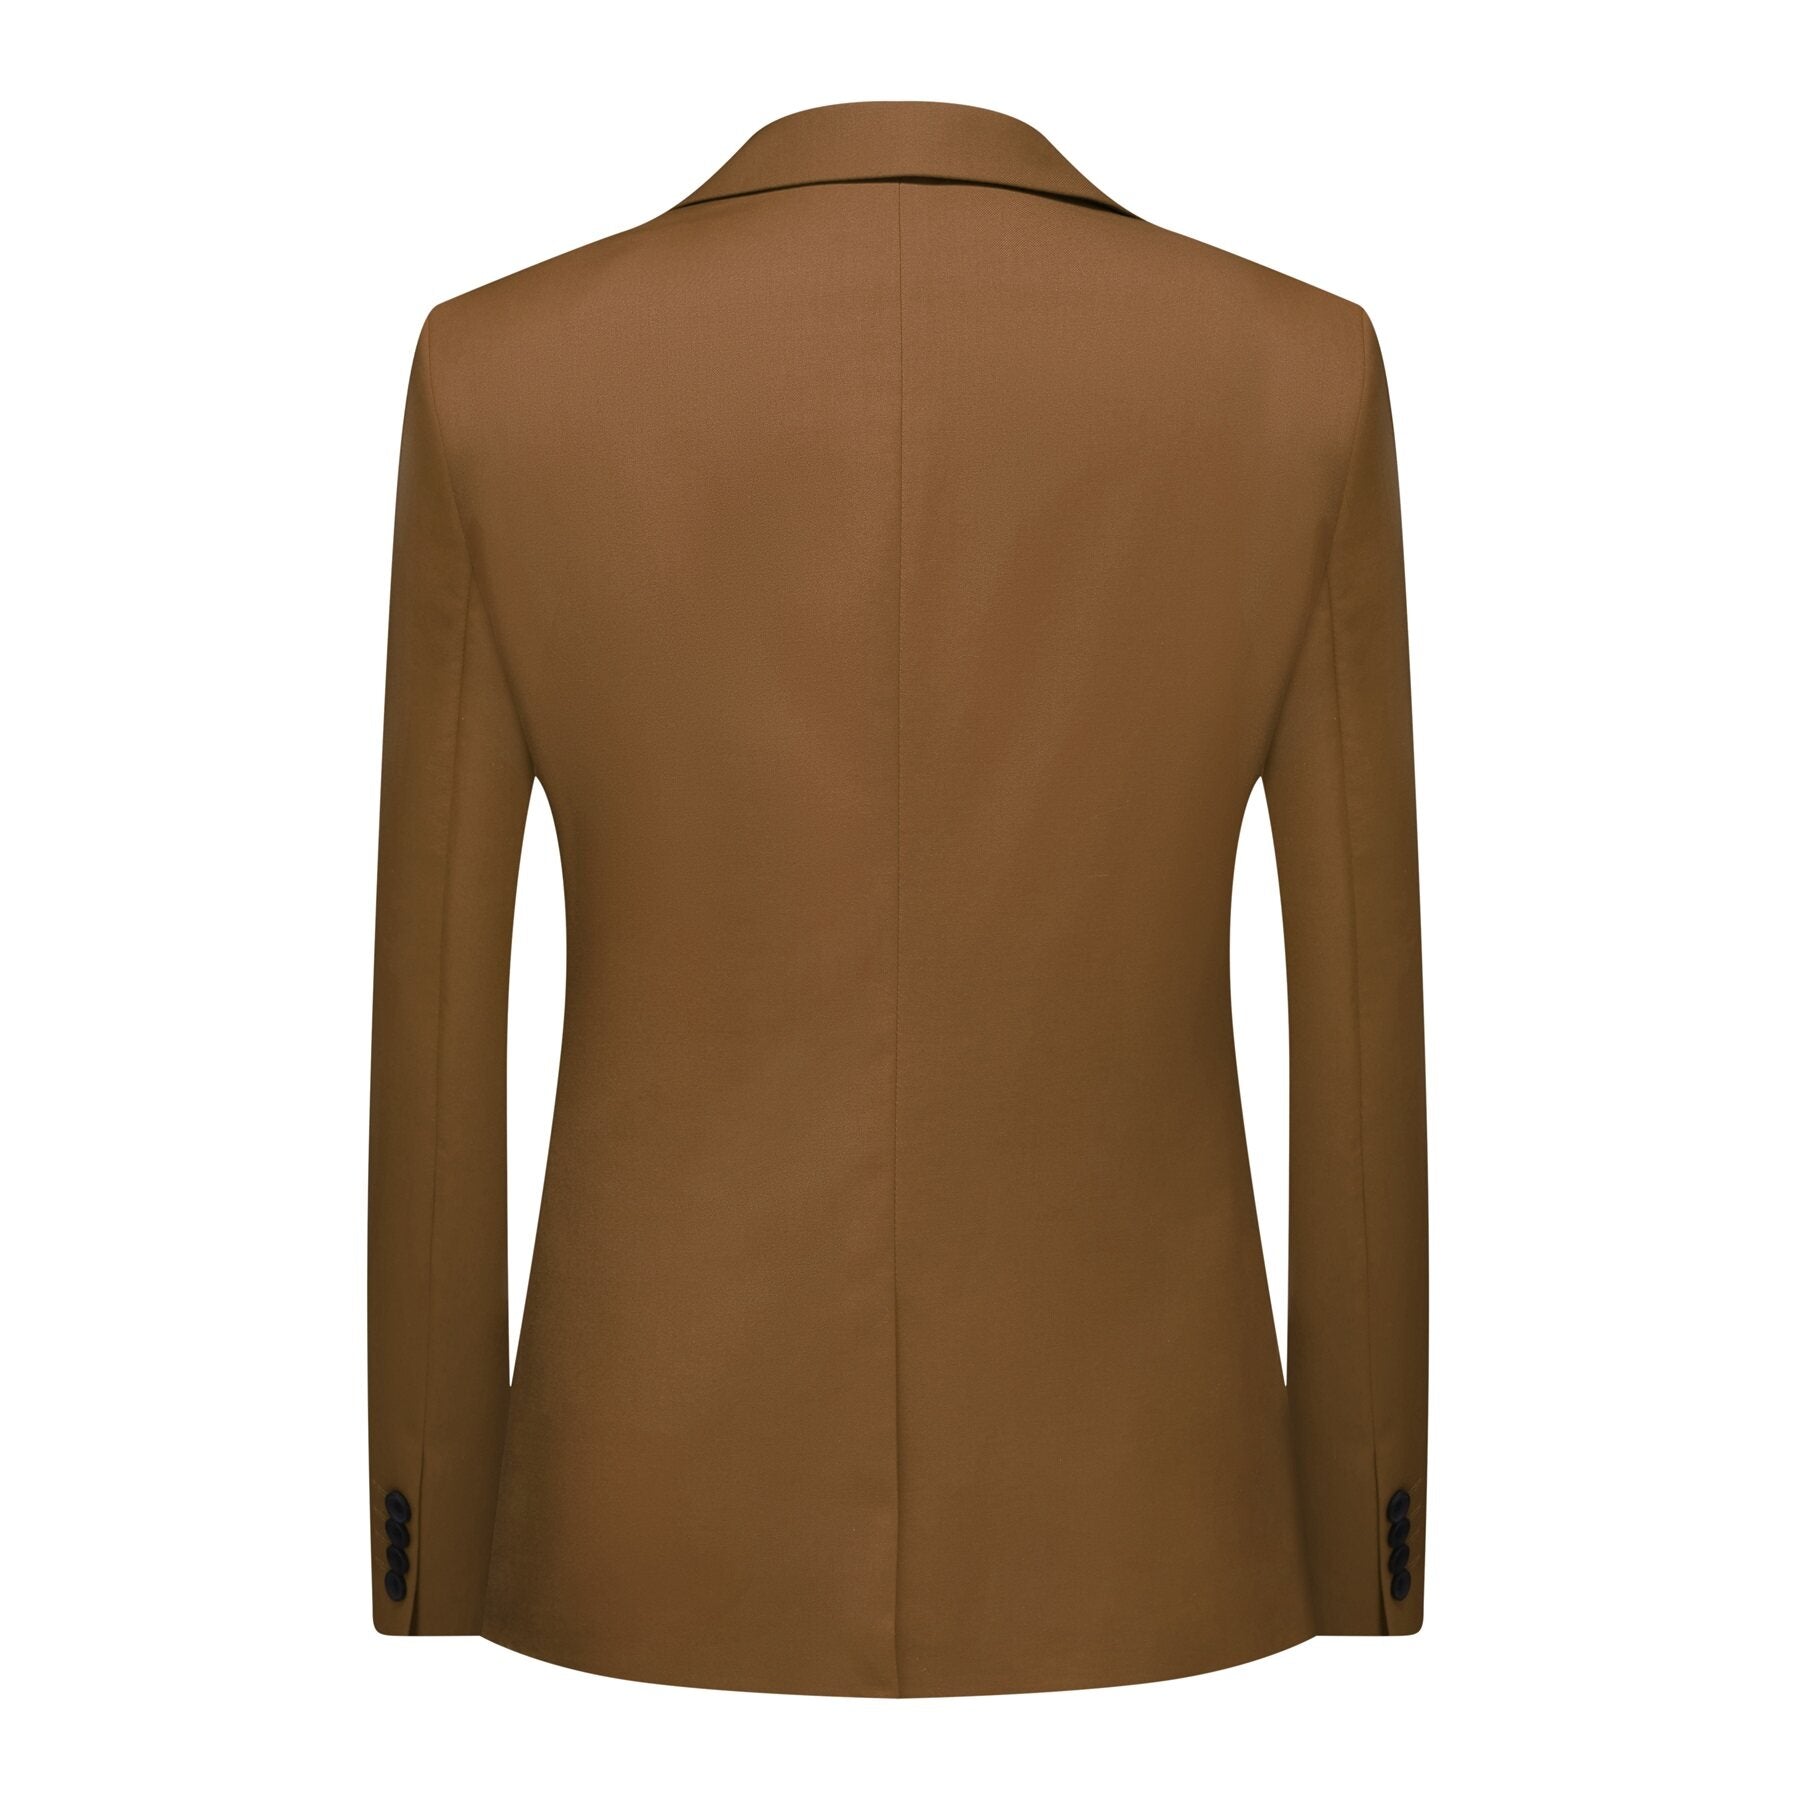 3-piece Men's Solid Color Notched Lapel Back Center Vent Suit Brown